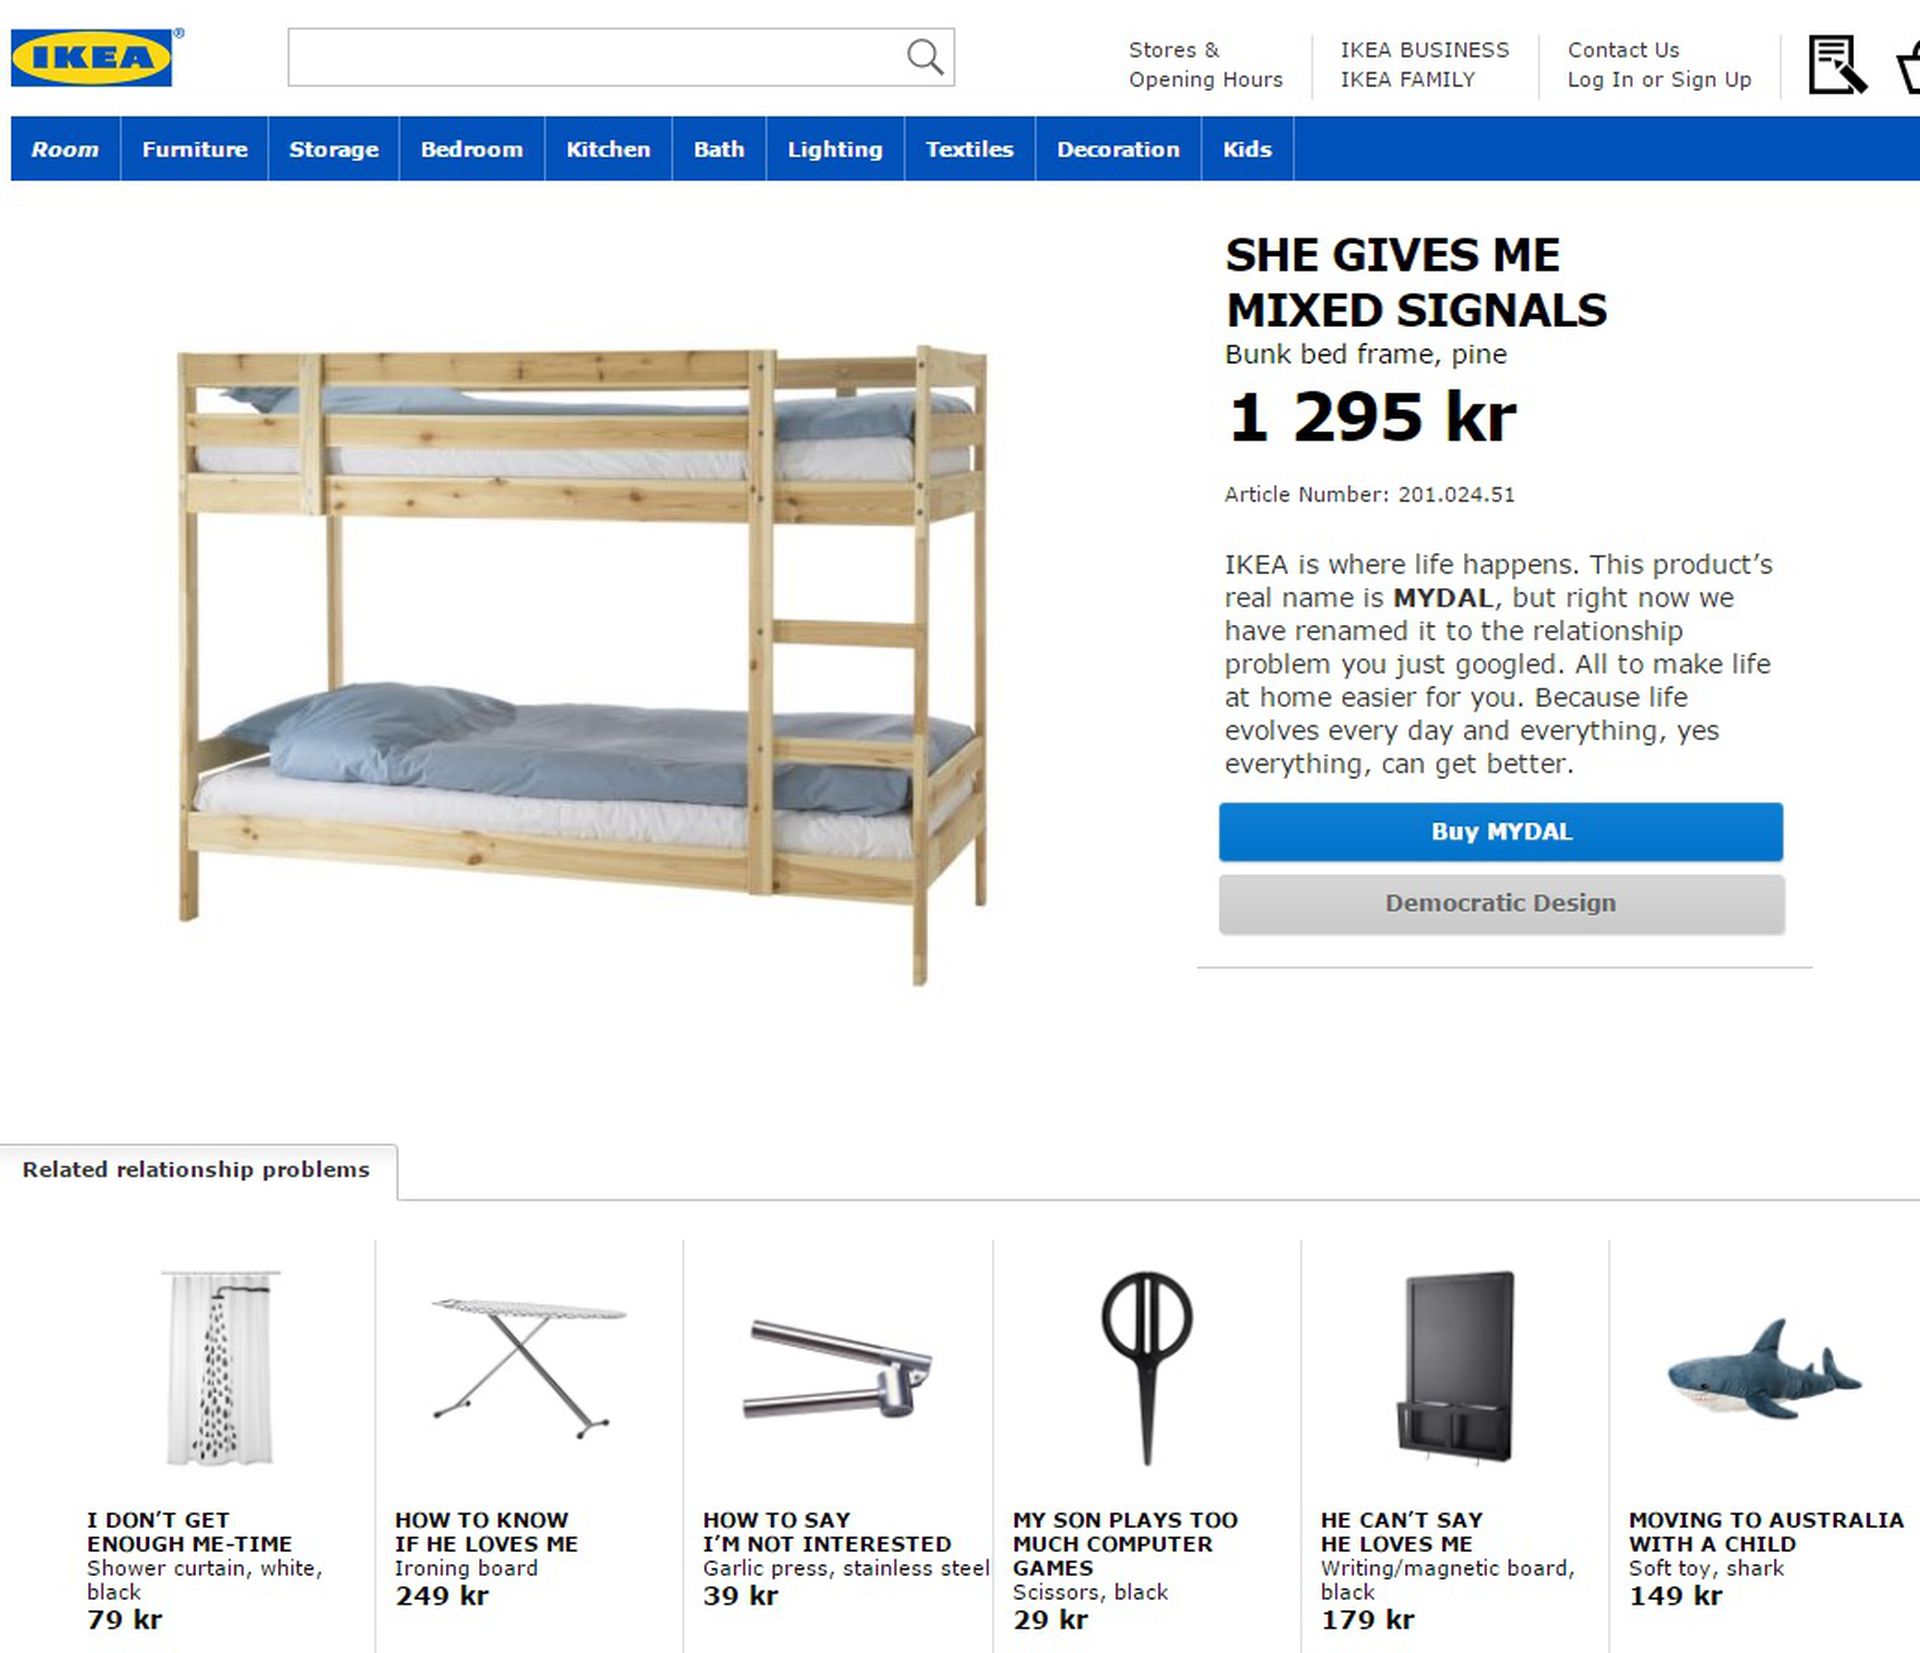 venster Vegetatie De Kamer IKEA verkoopt meubels via relatieproblemen - NRC